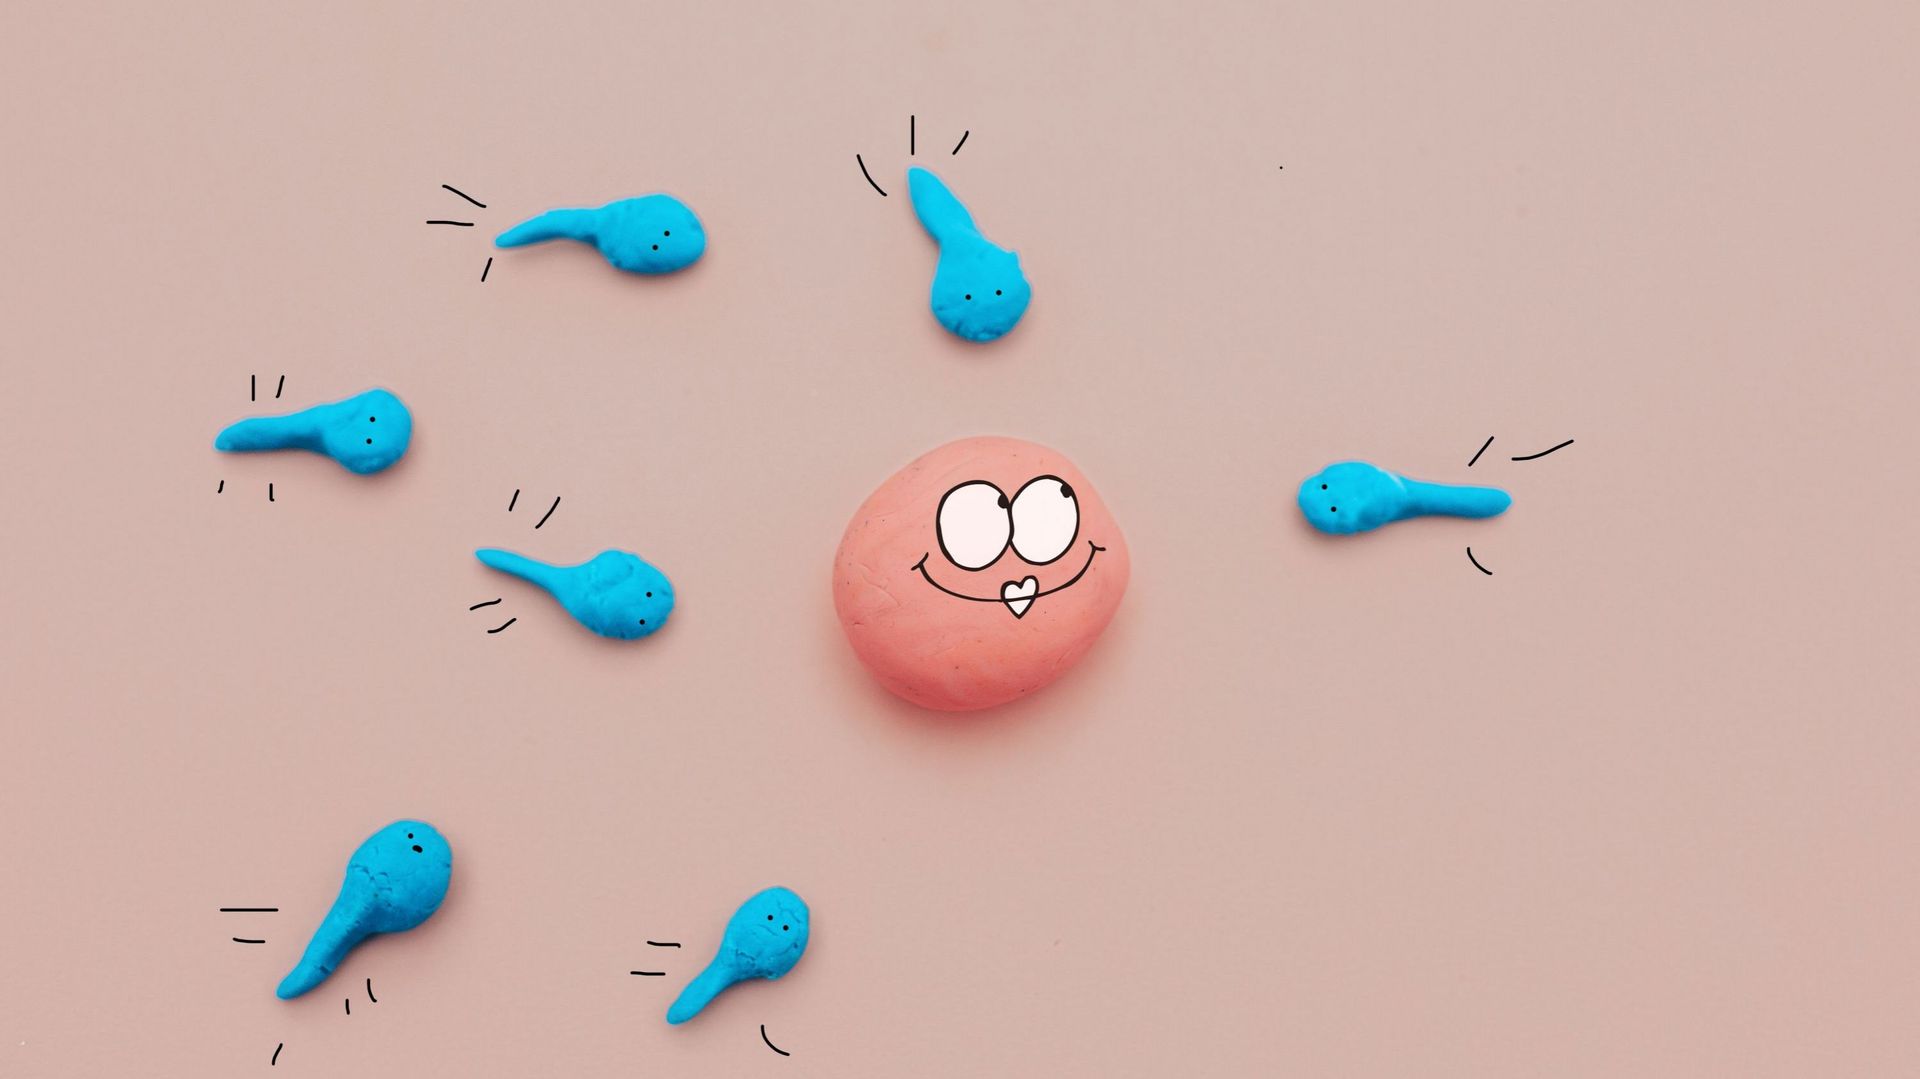 Sperm cells about to fertilize an ovum .new life